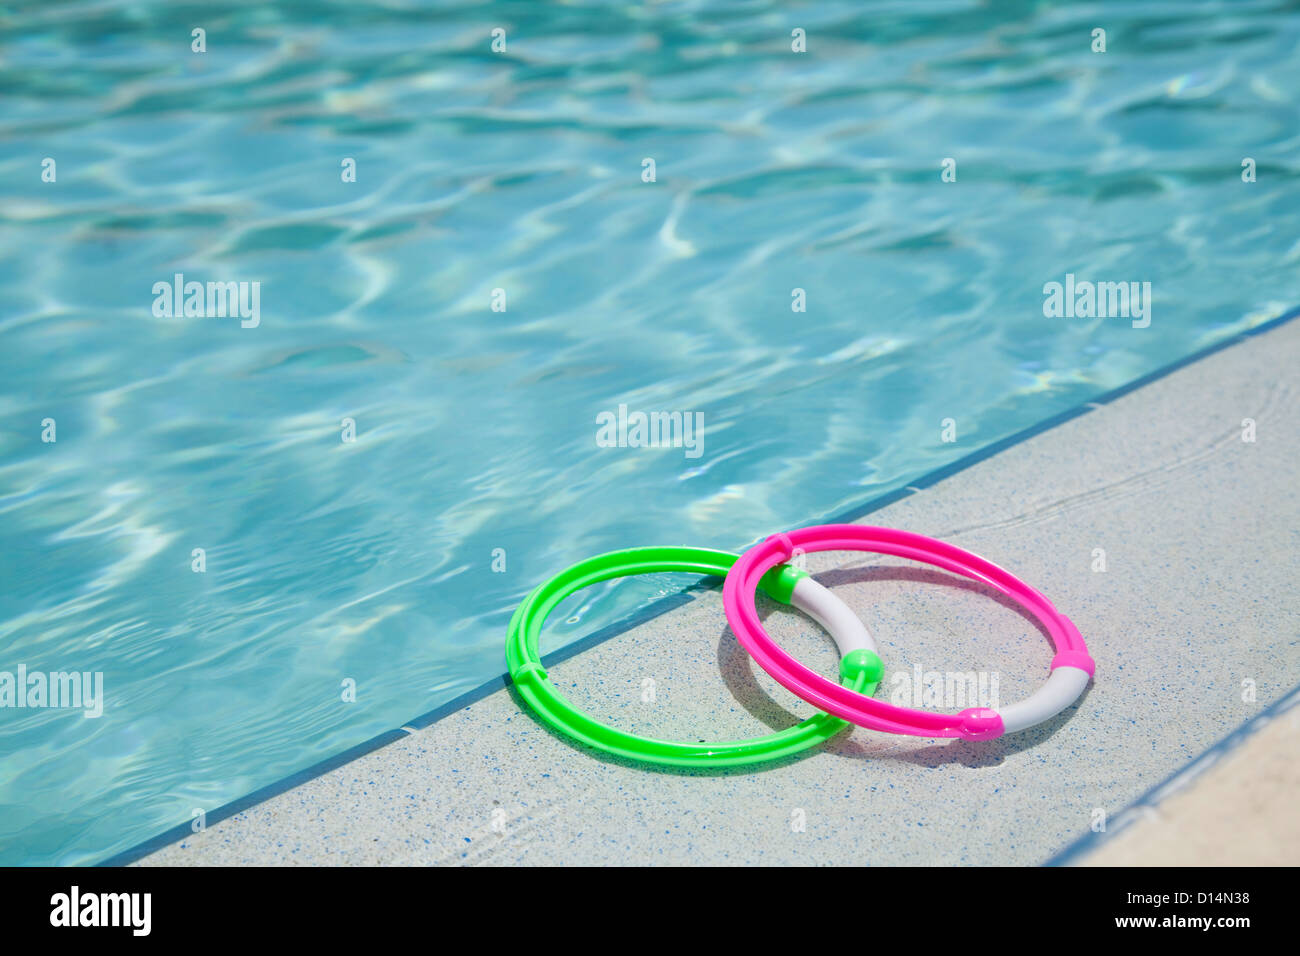 Stati Uniti d'America, Florida, San Pietroburgo, due anelli sul bordo della piscina Foto Stock